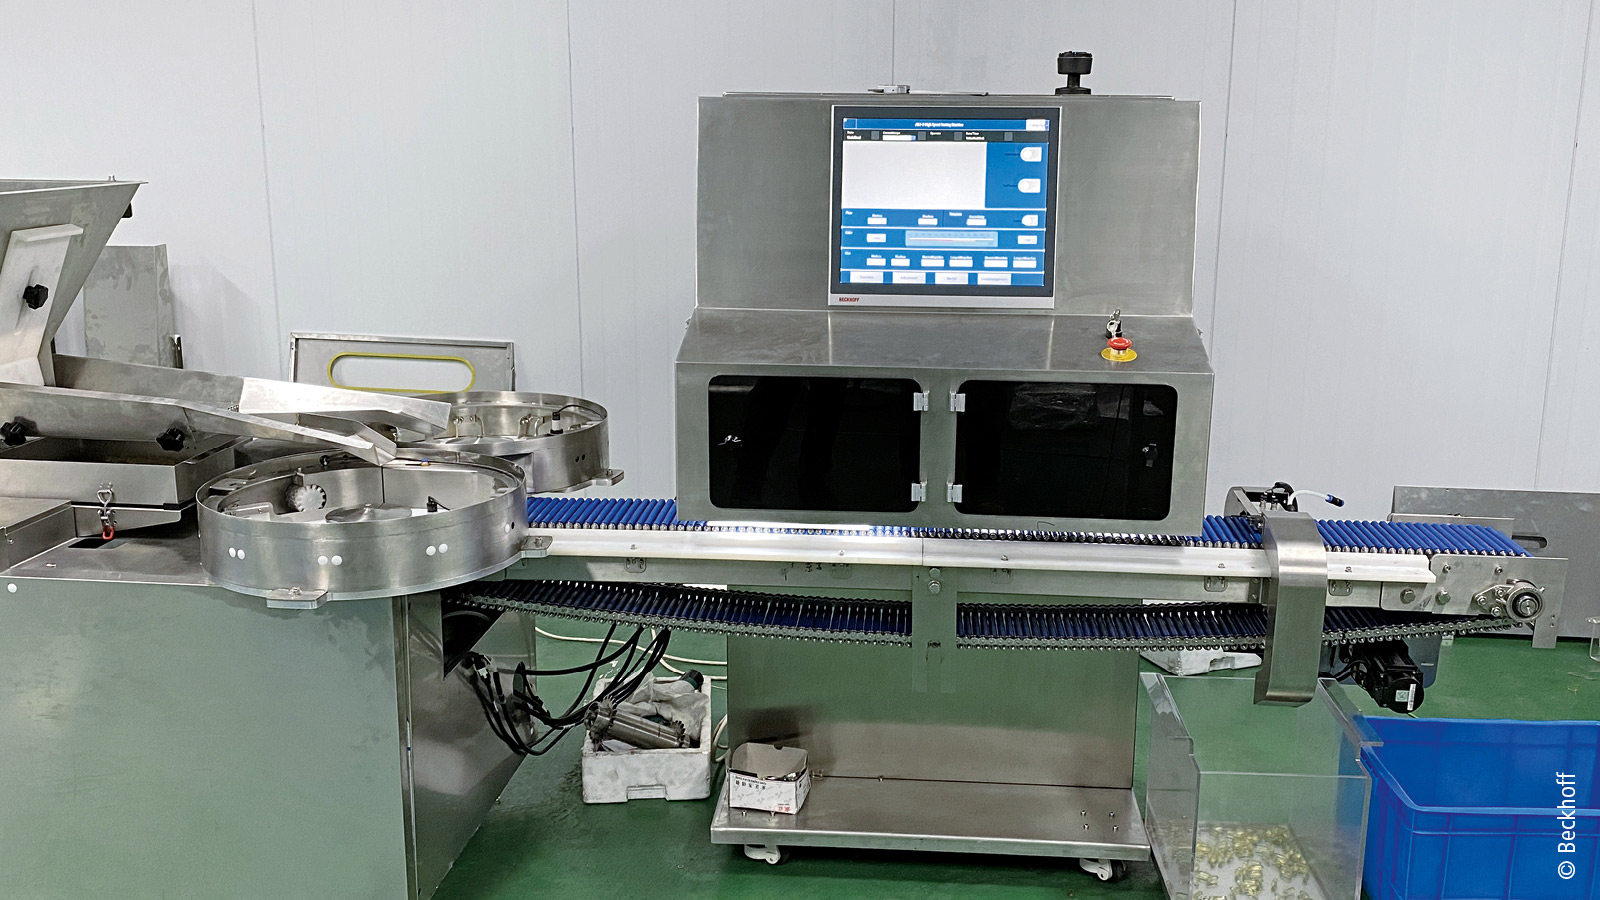   通过 TwinCAT Vision 和 TwinCAT HMI 实现的高度集成化的软胶囊检测机。 